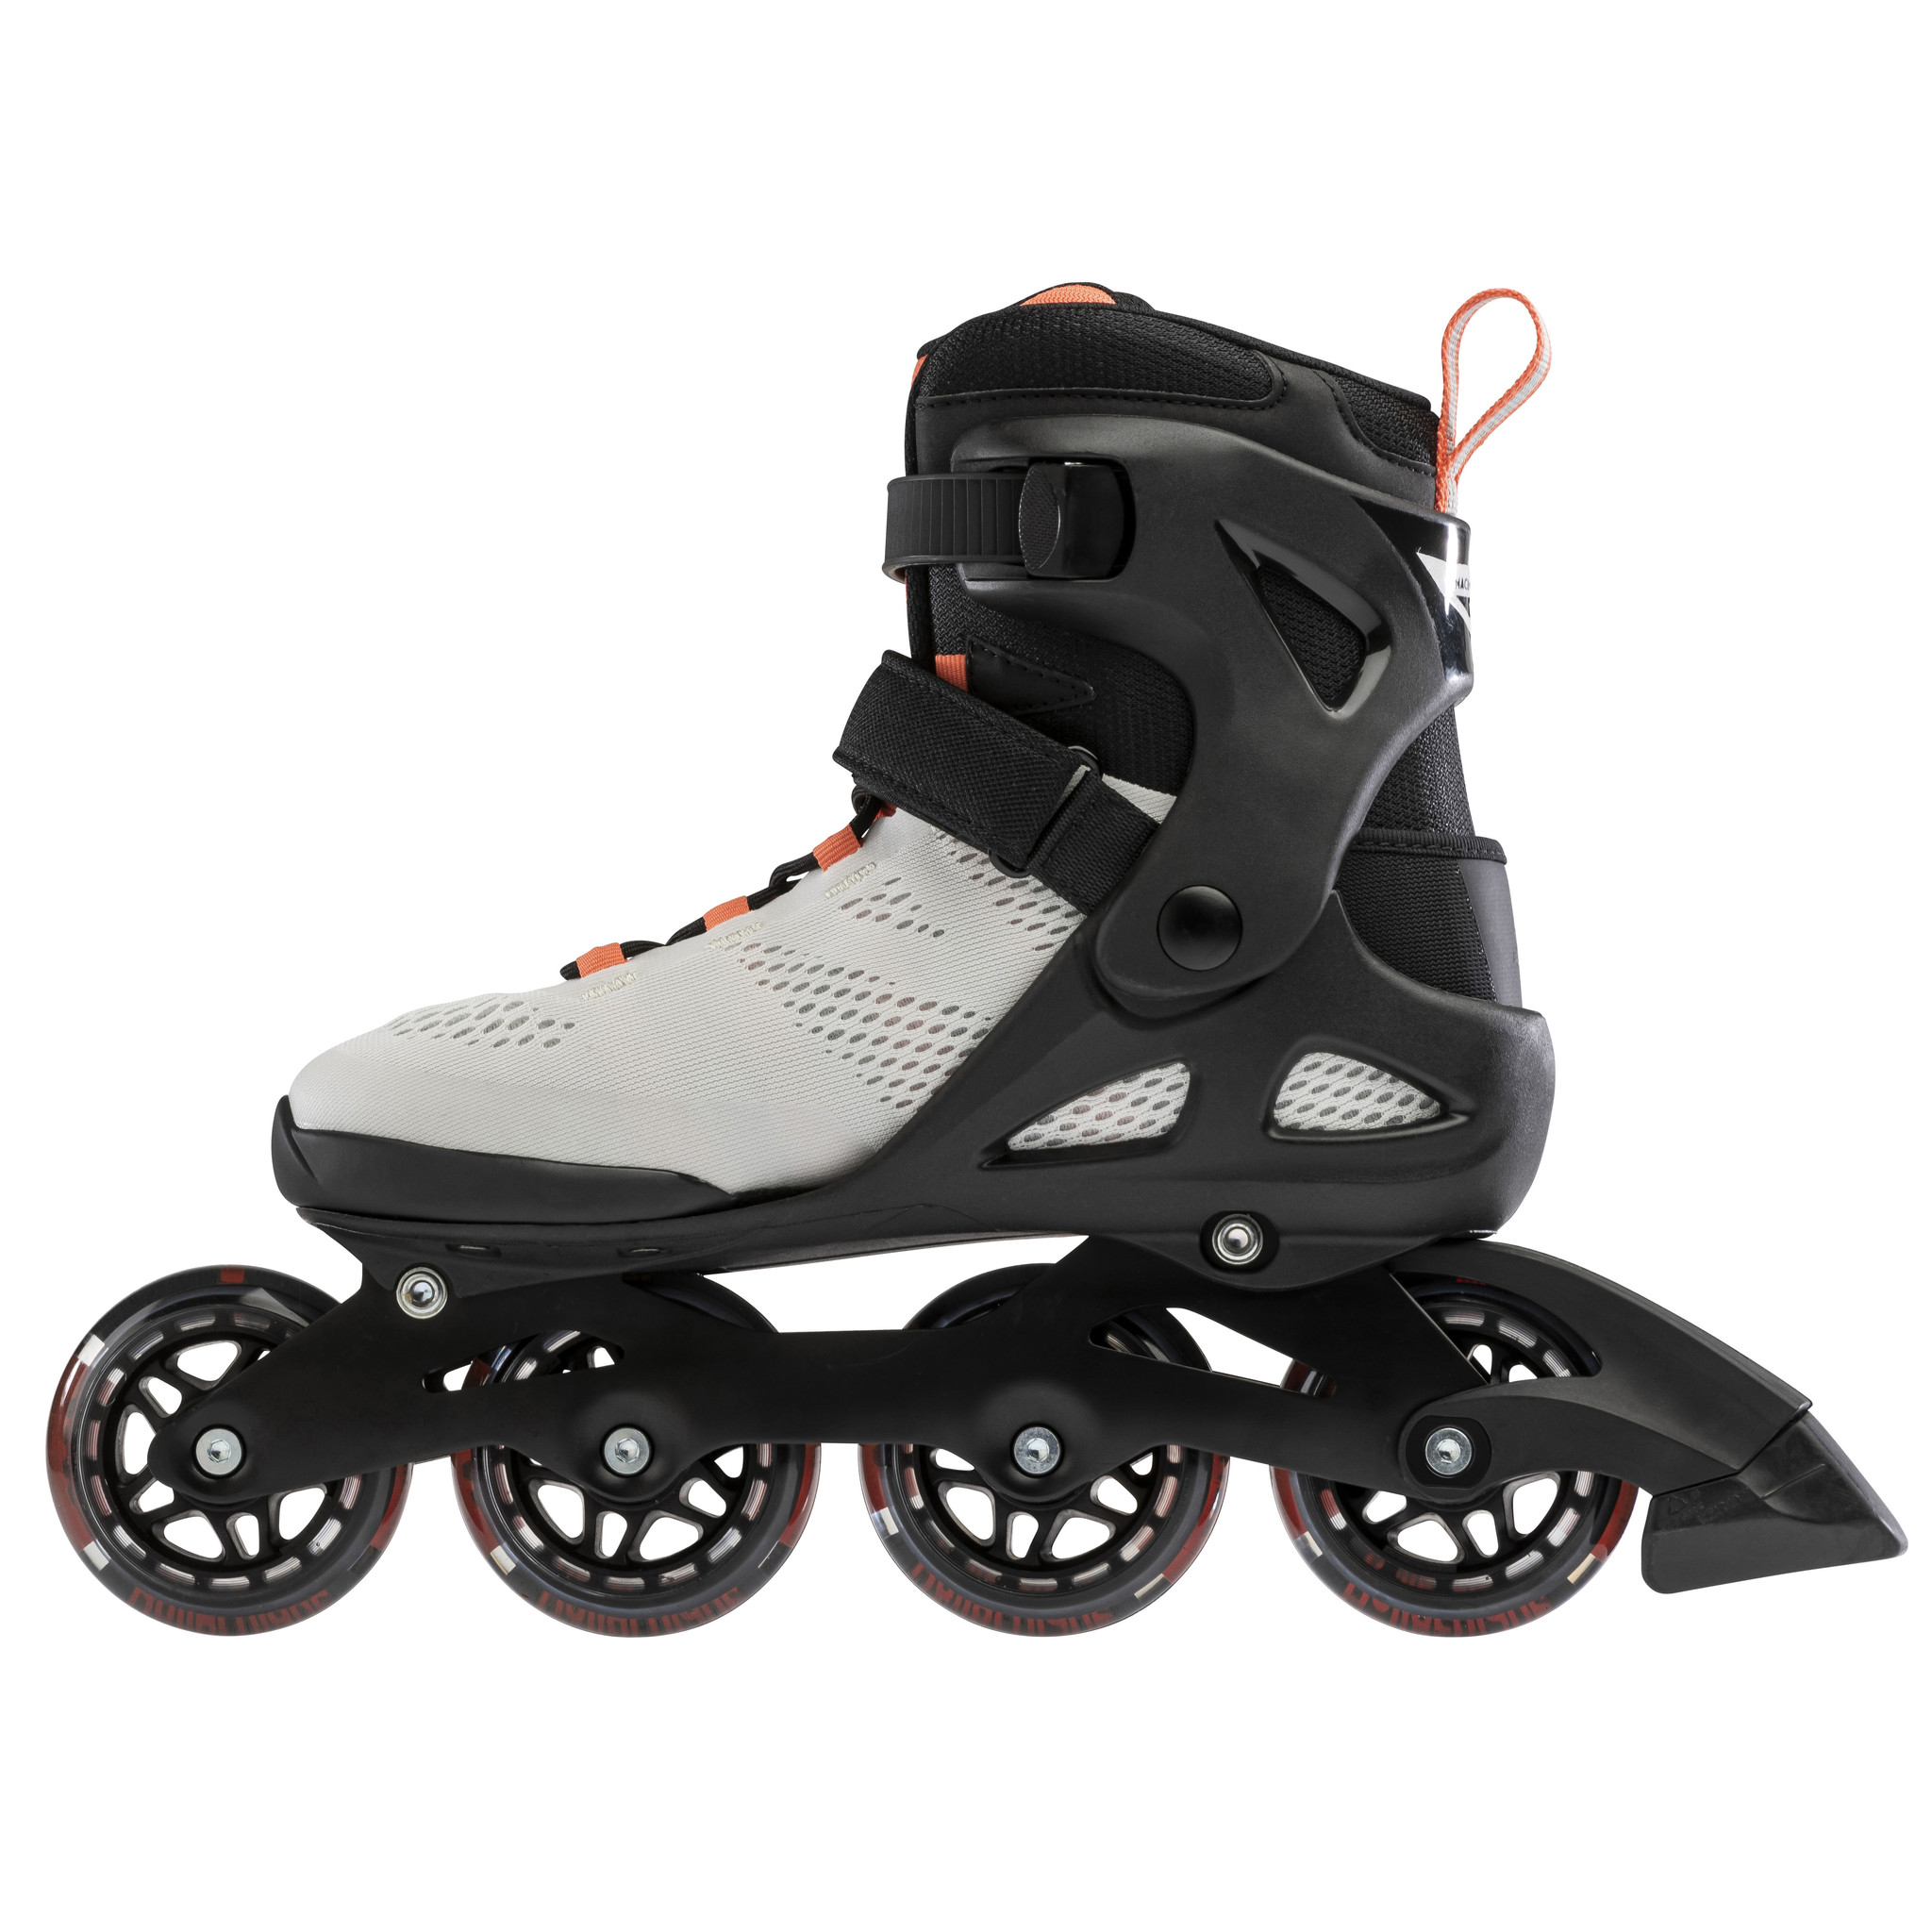 Rollerblade Macroblade 80 Glacier-Grey / Coral inline skates